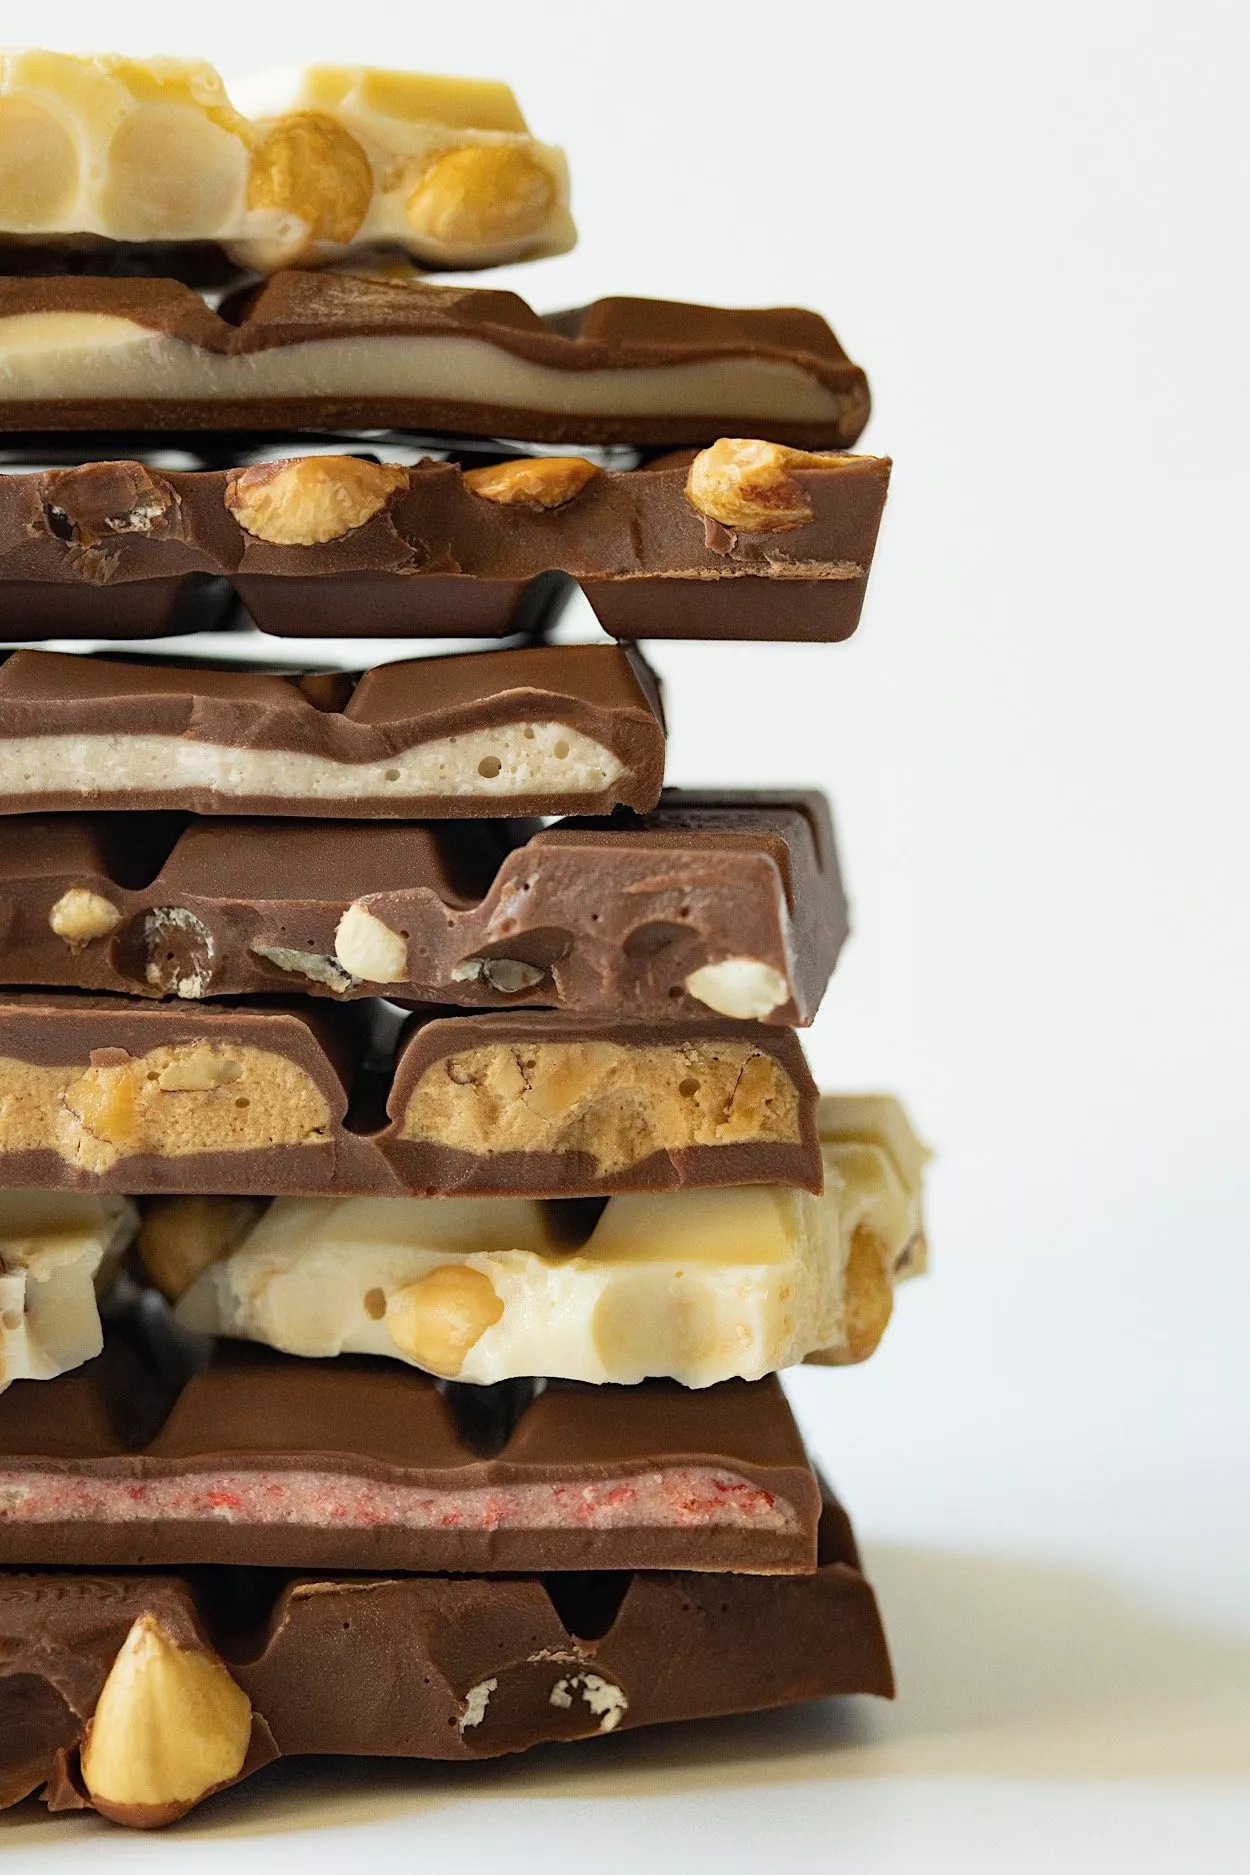 Entdecke die einzigartige Vielfalt der Marabou-Schokolade im Naschhaus 4